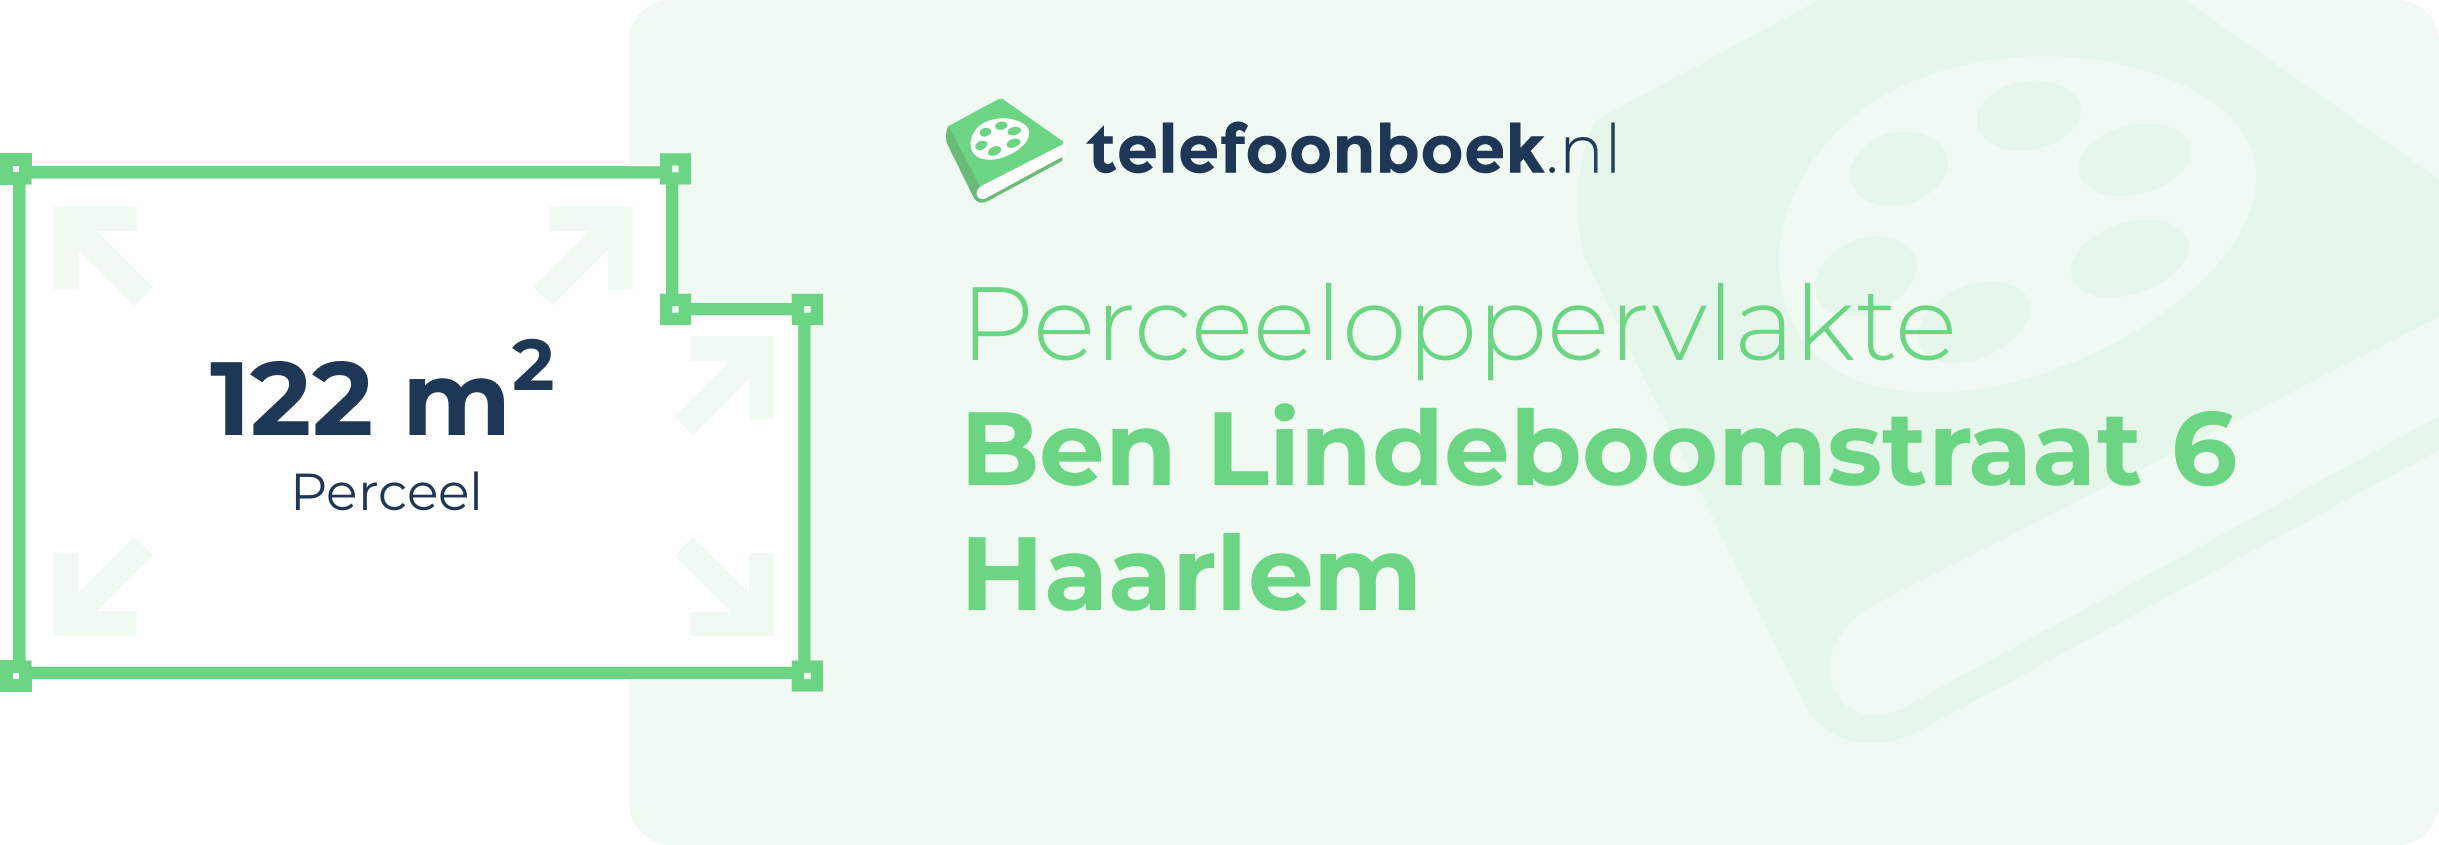 Perceeloppervlakte Ben Lindeboomstraat 6 Haarlem